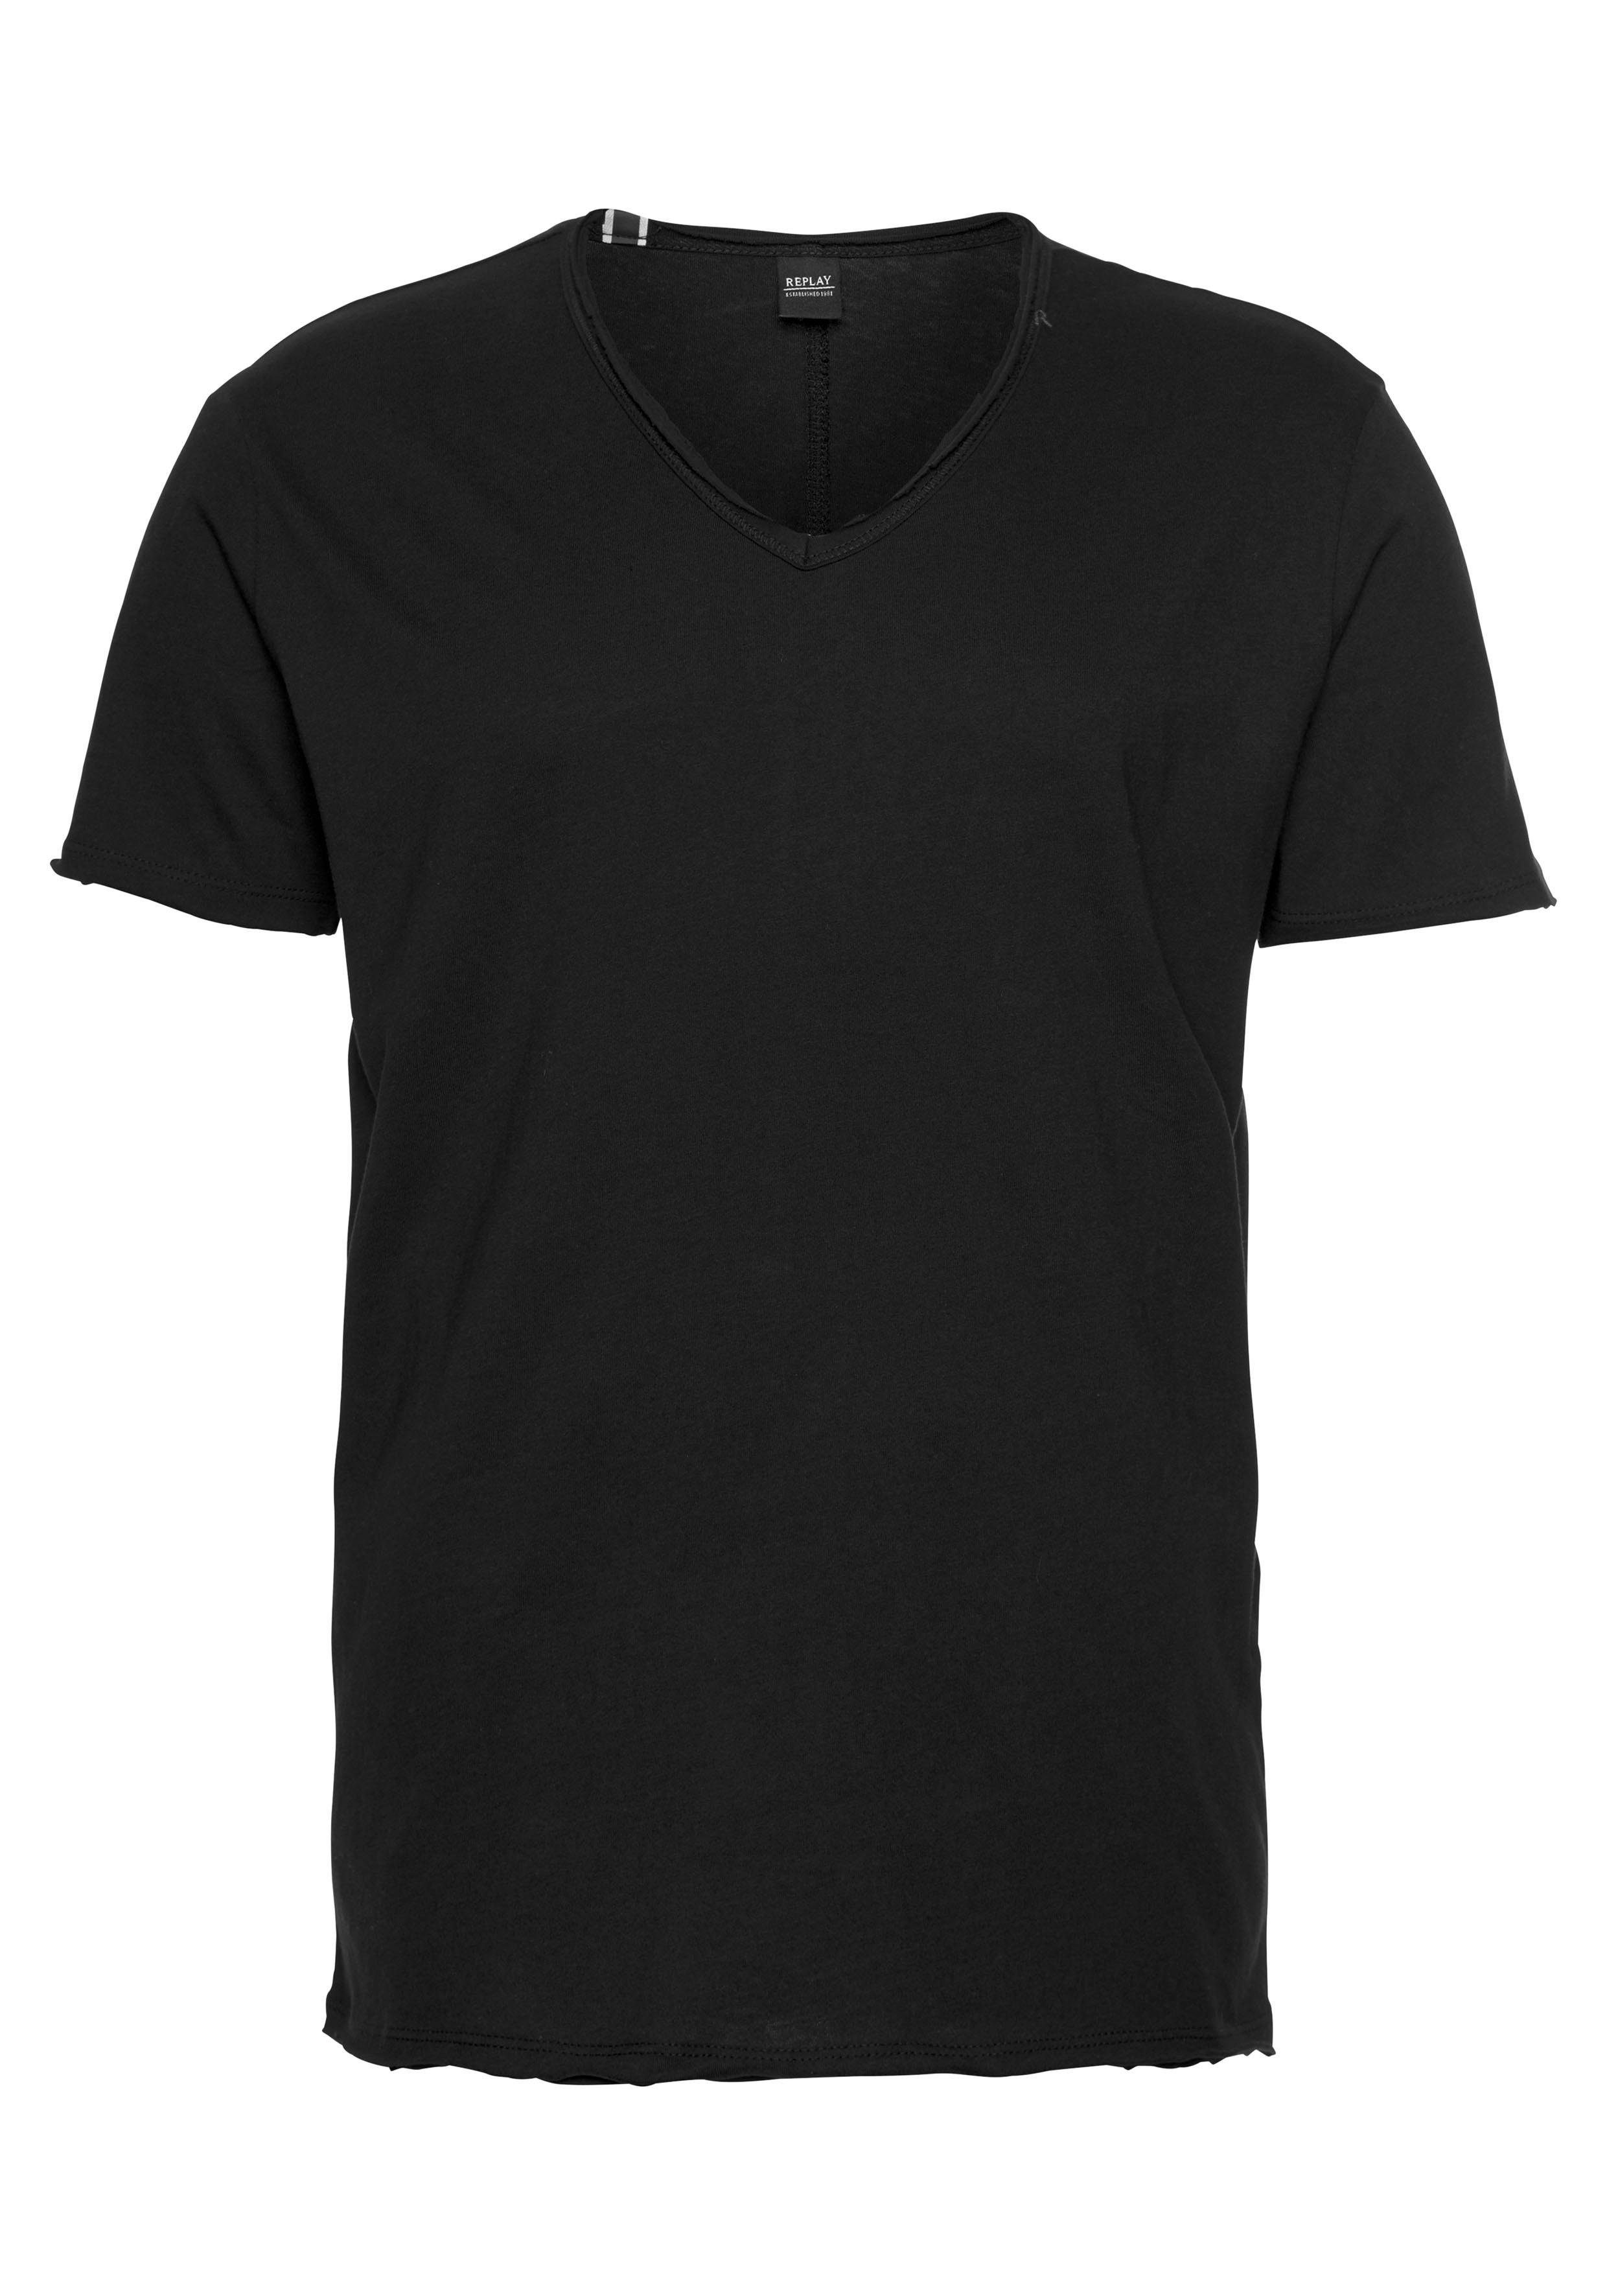 T-Shirt offenen Replay Kanten schwarz